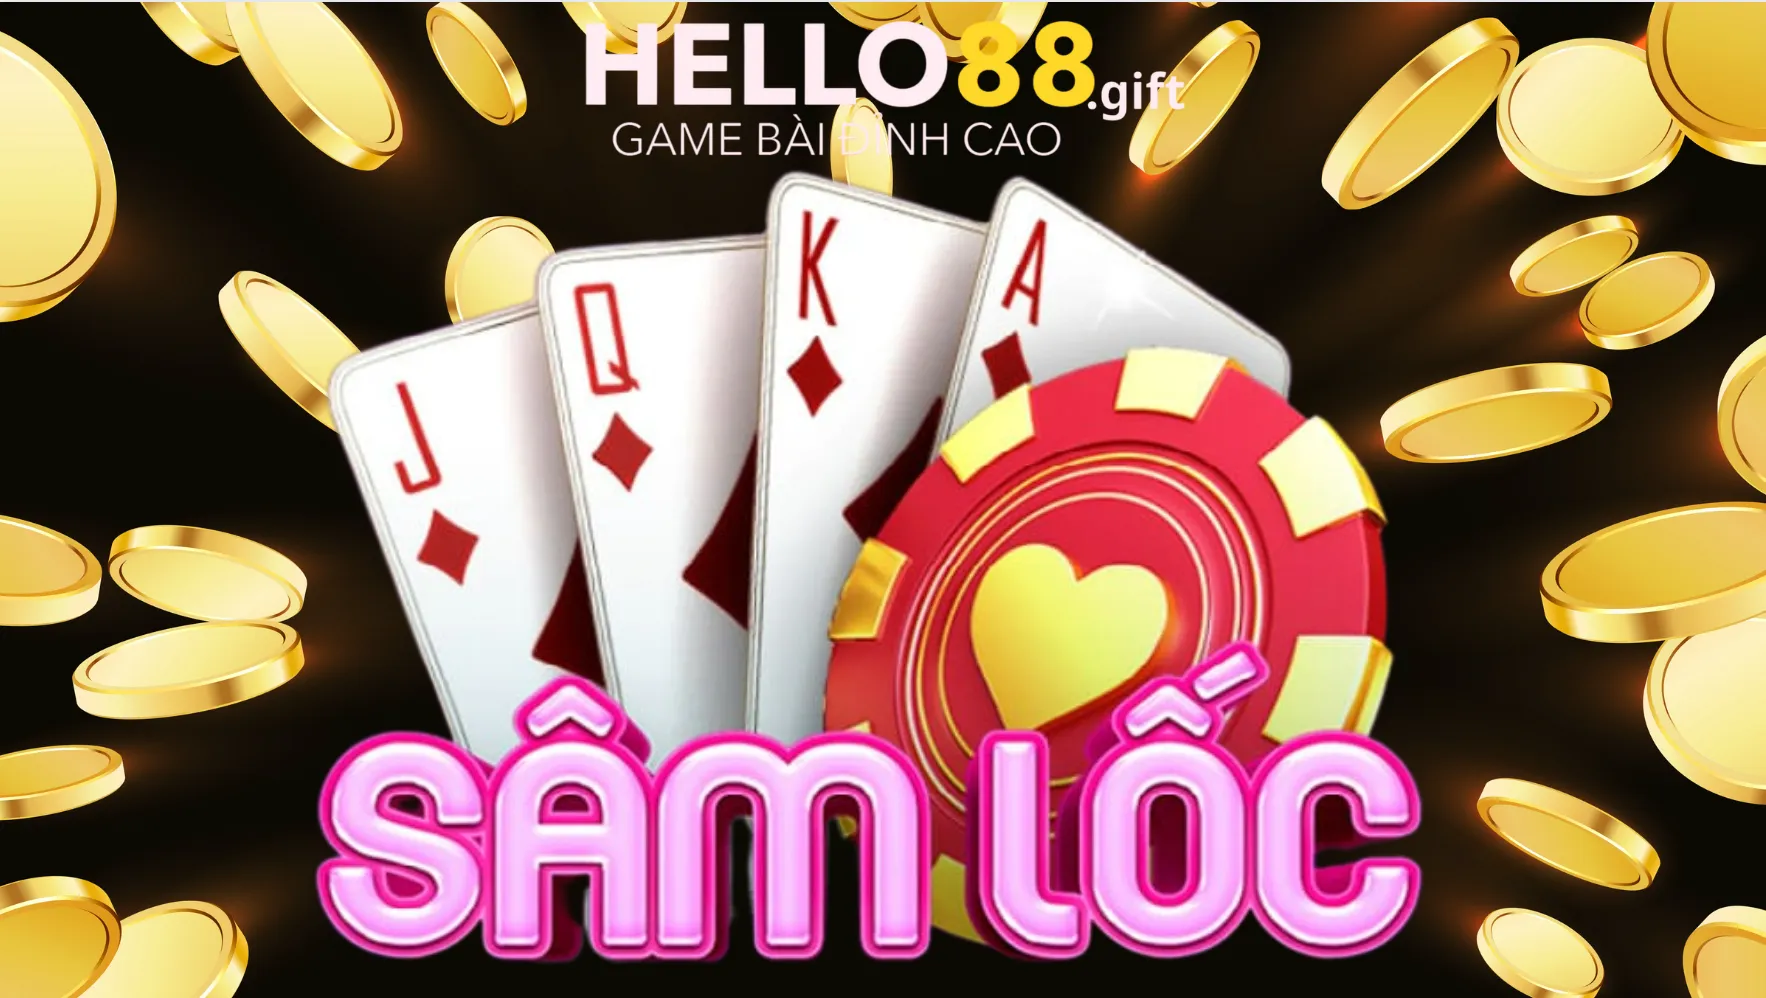 Sâm lốc Hello88, game bài mang đến trải nghiệm thú vị cho người chơi